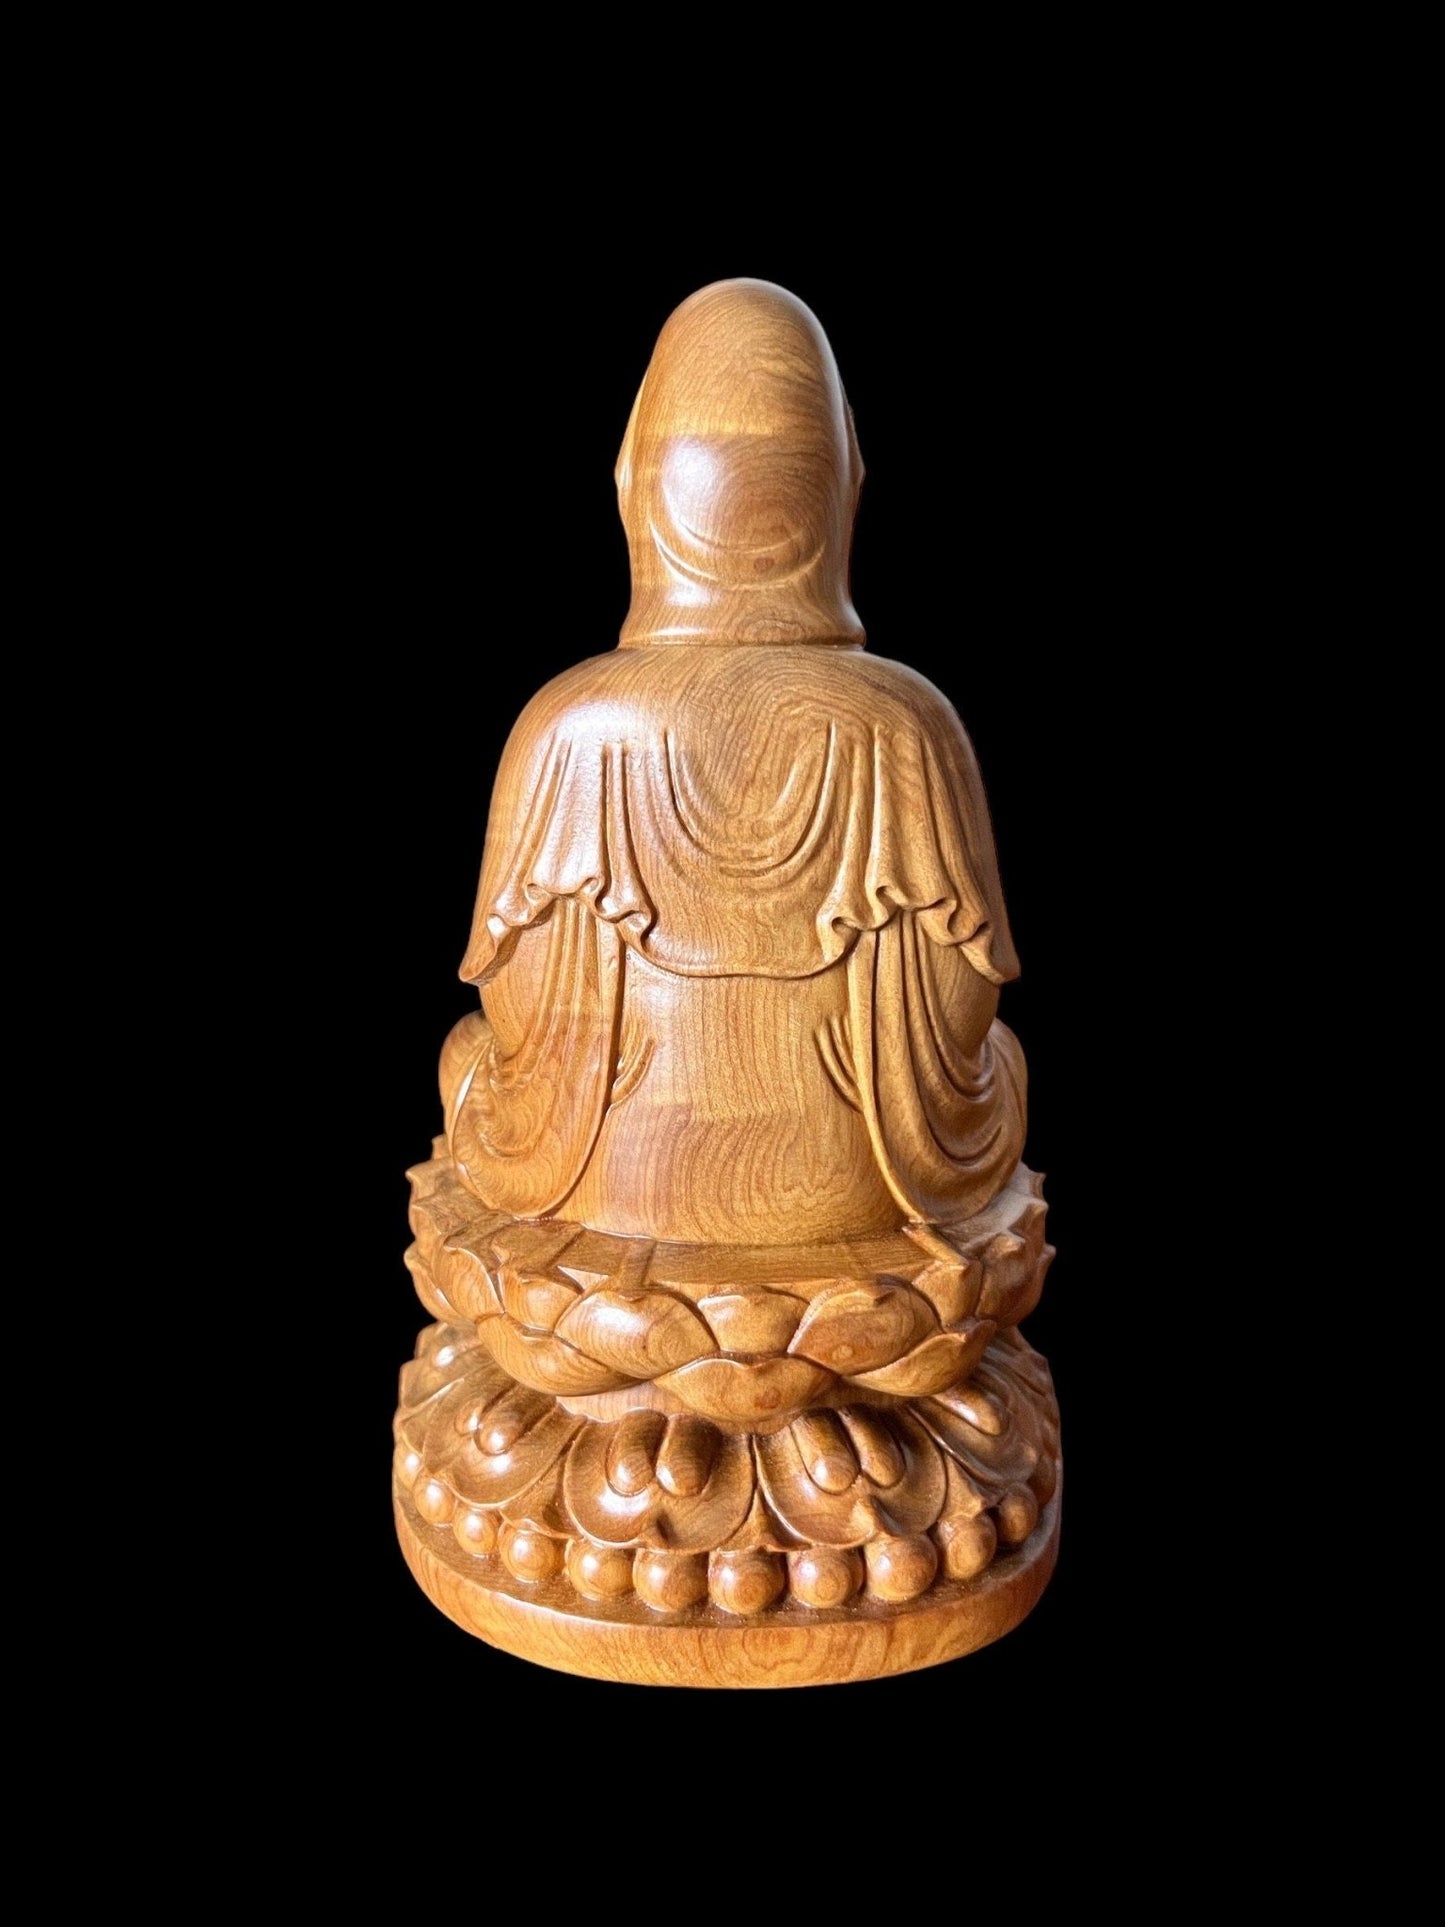 Guan Yin Bodhisattva Buddha Sitting on Lotus Wood StatueTuNaCraftCollection